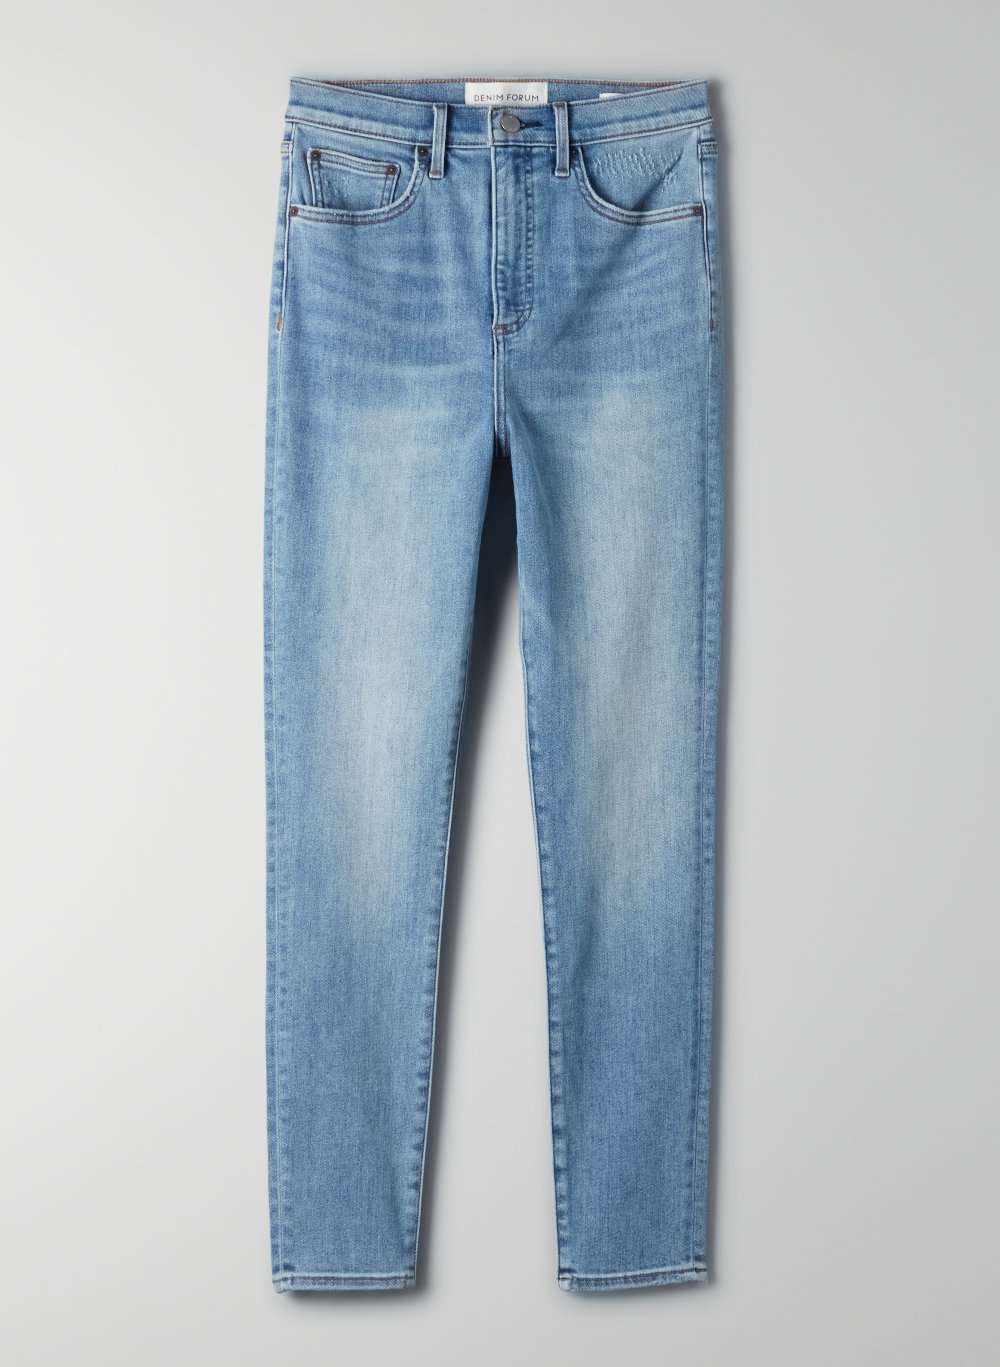 aritzia lola jeans